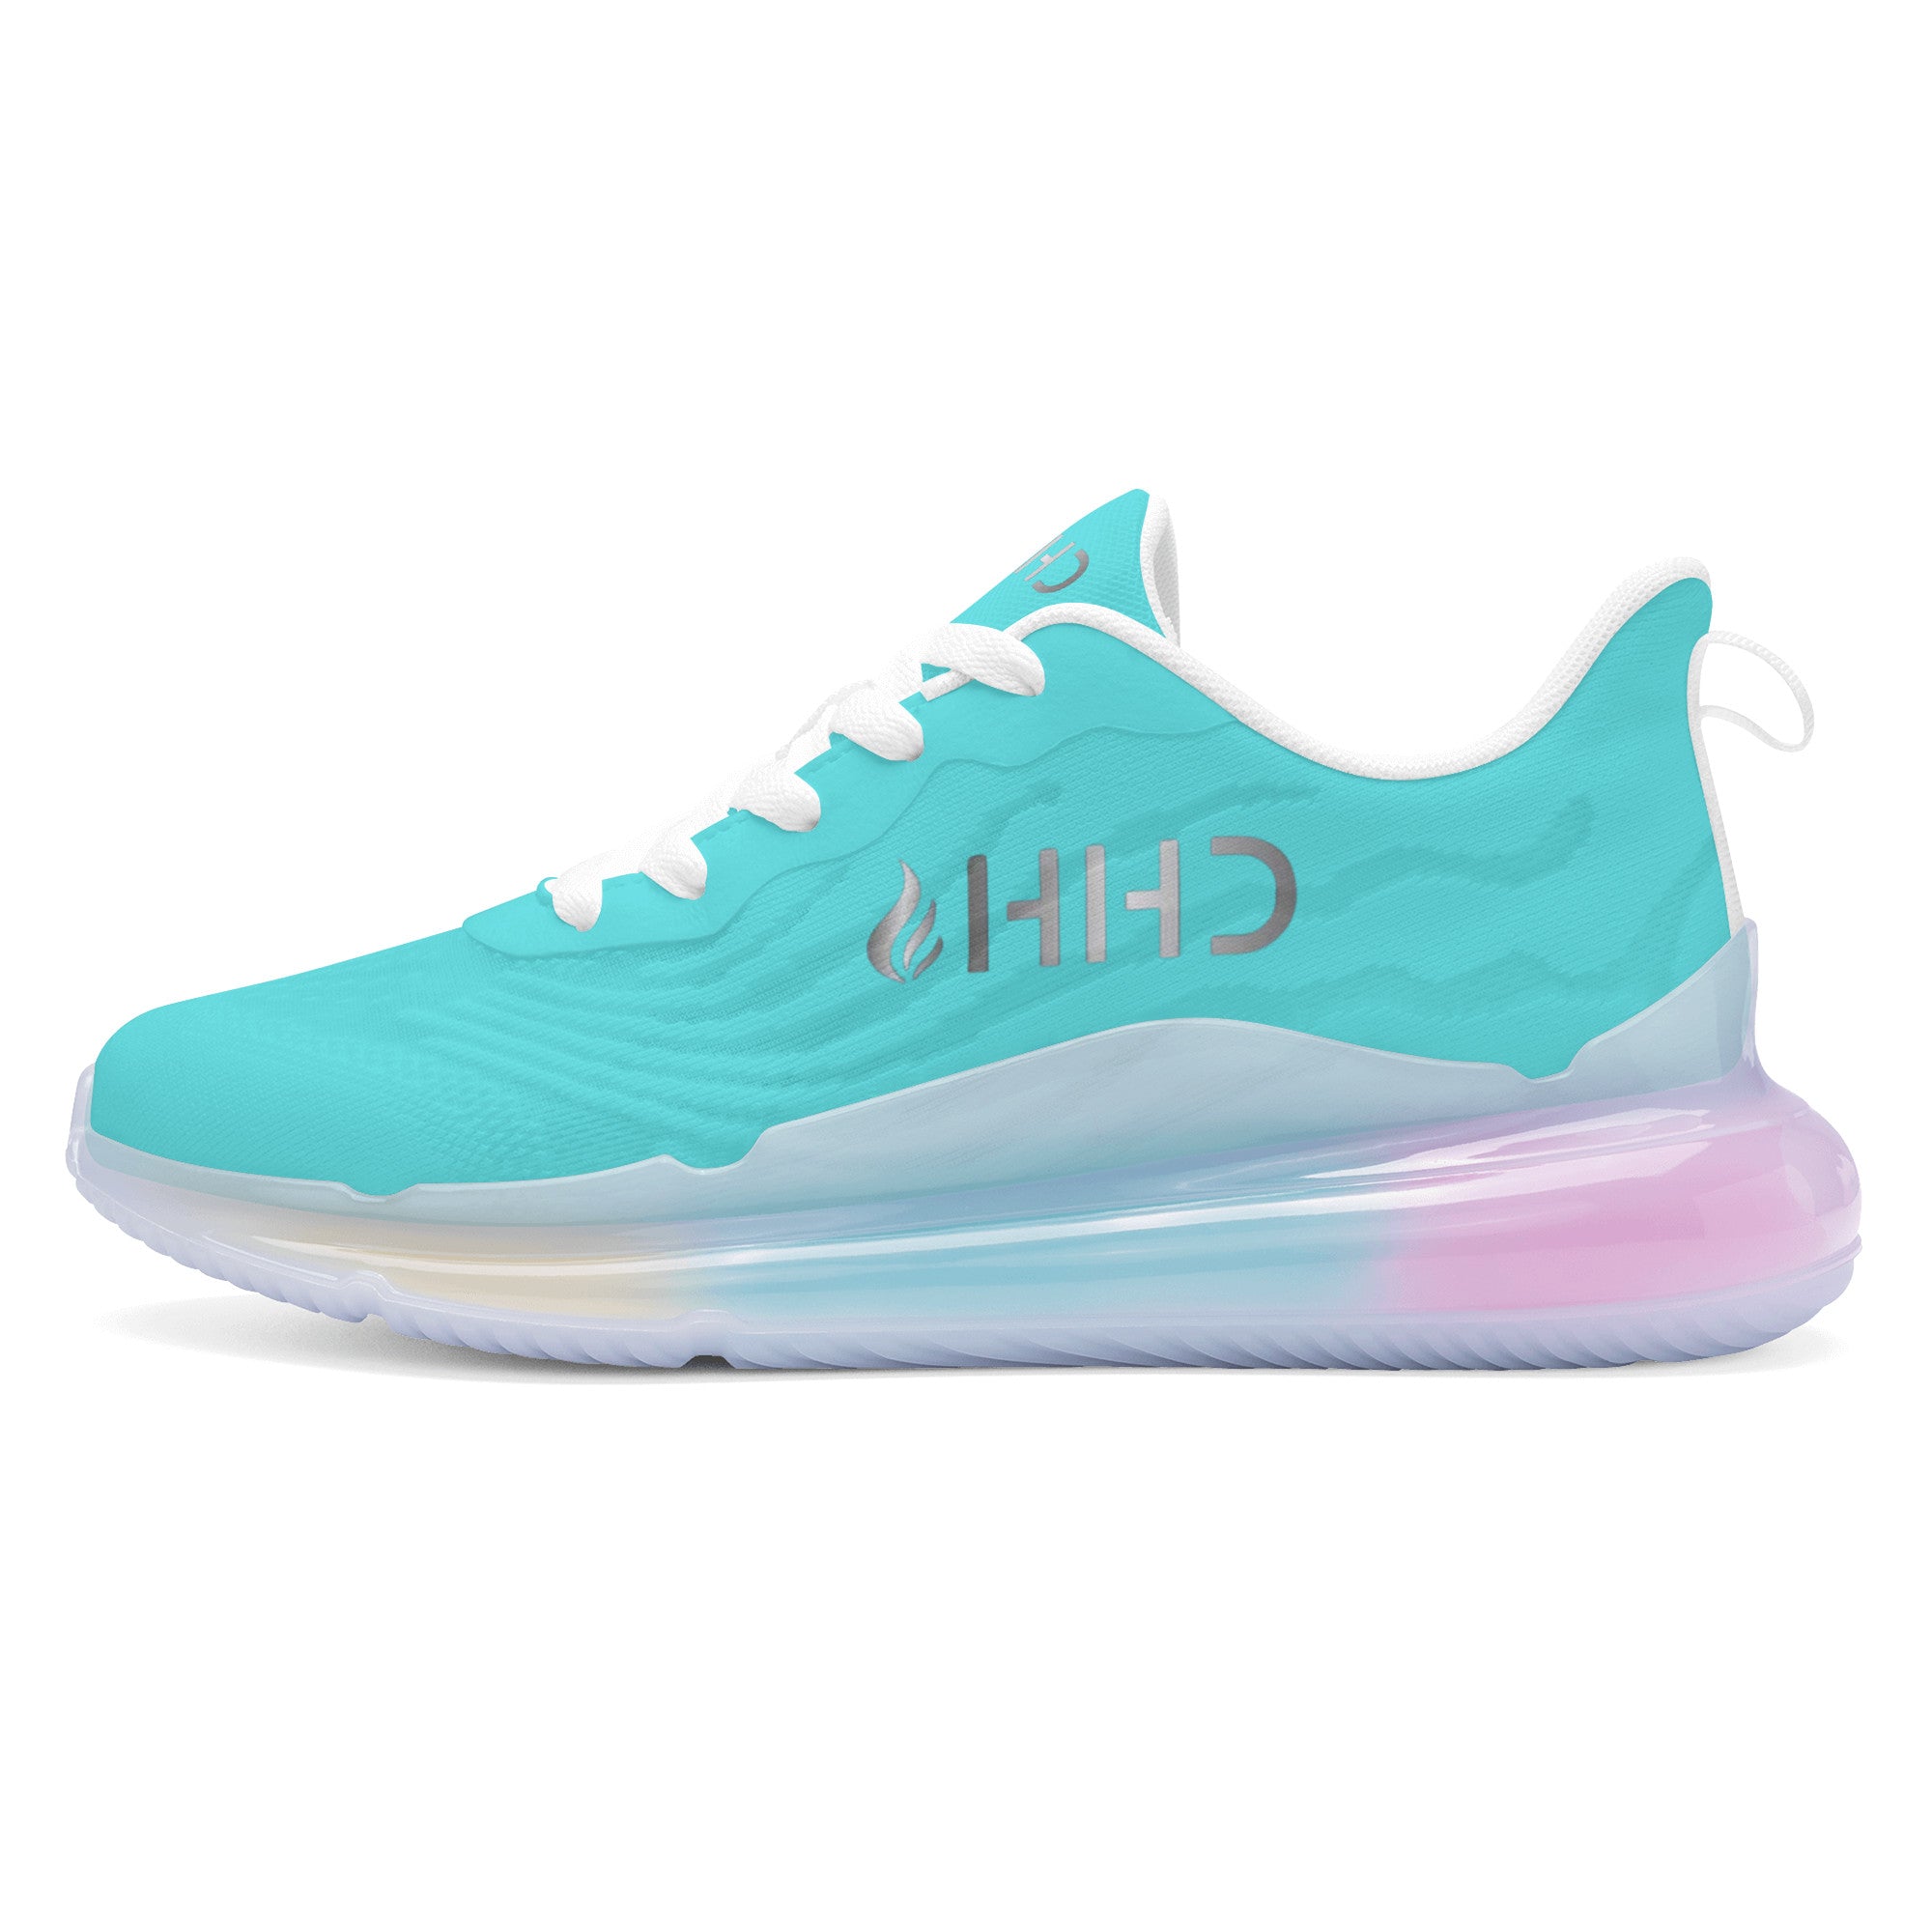 HHD - Customized Air Zero Cushion Running Shoes - Shoe Zero